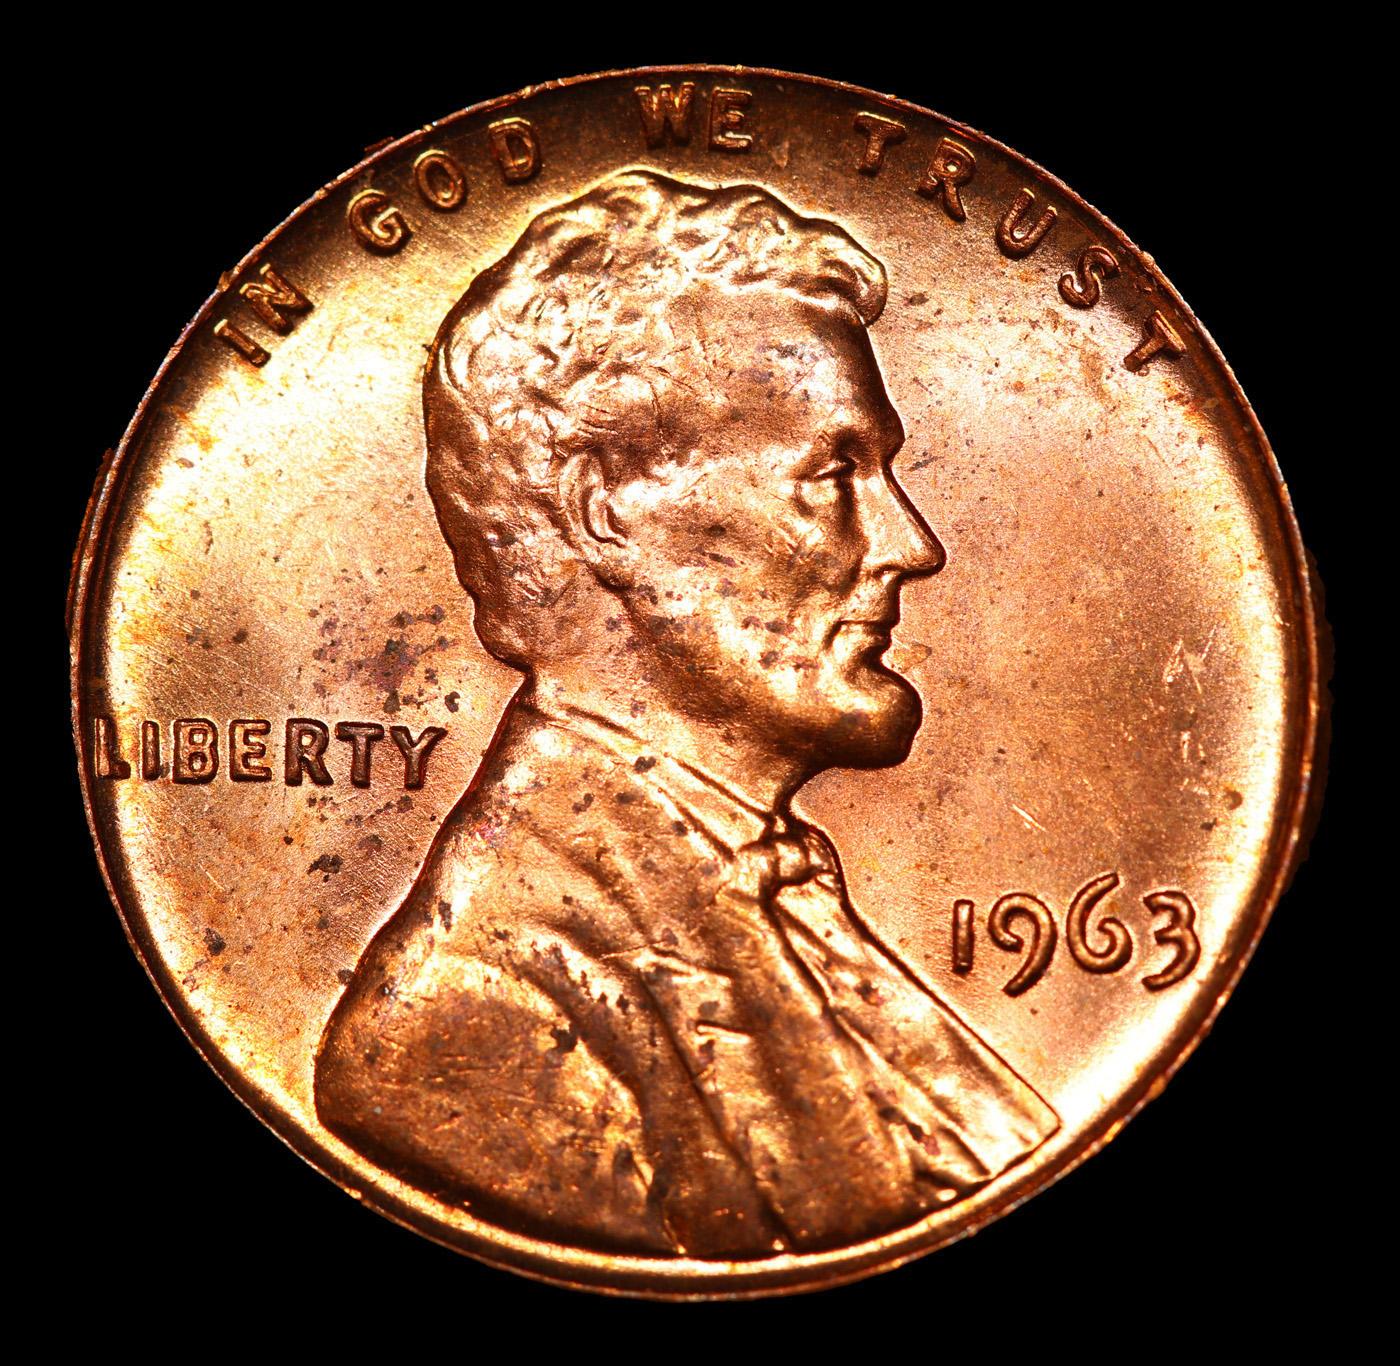 1963-p Lincoln Cent 1c Grades GEM Unc RD